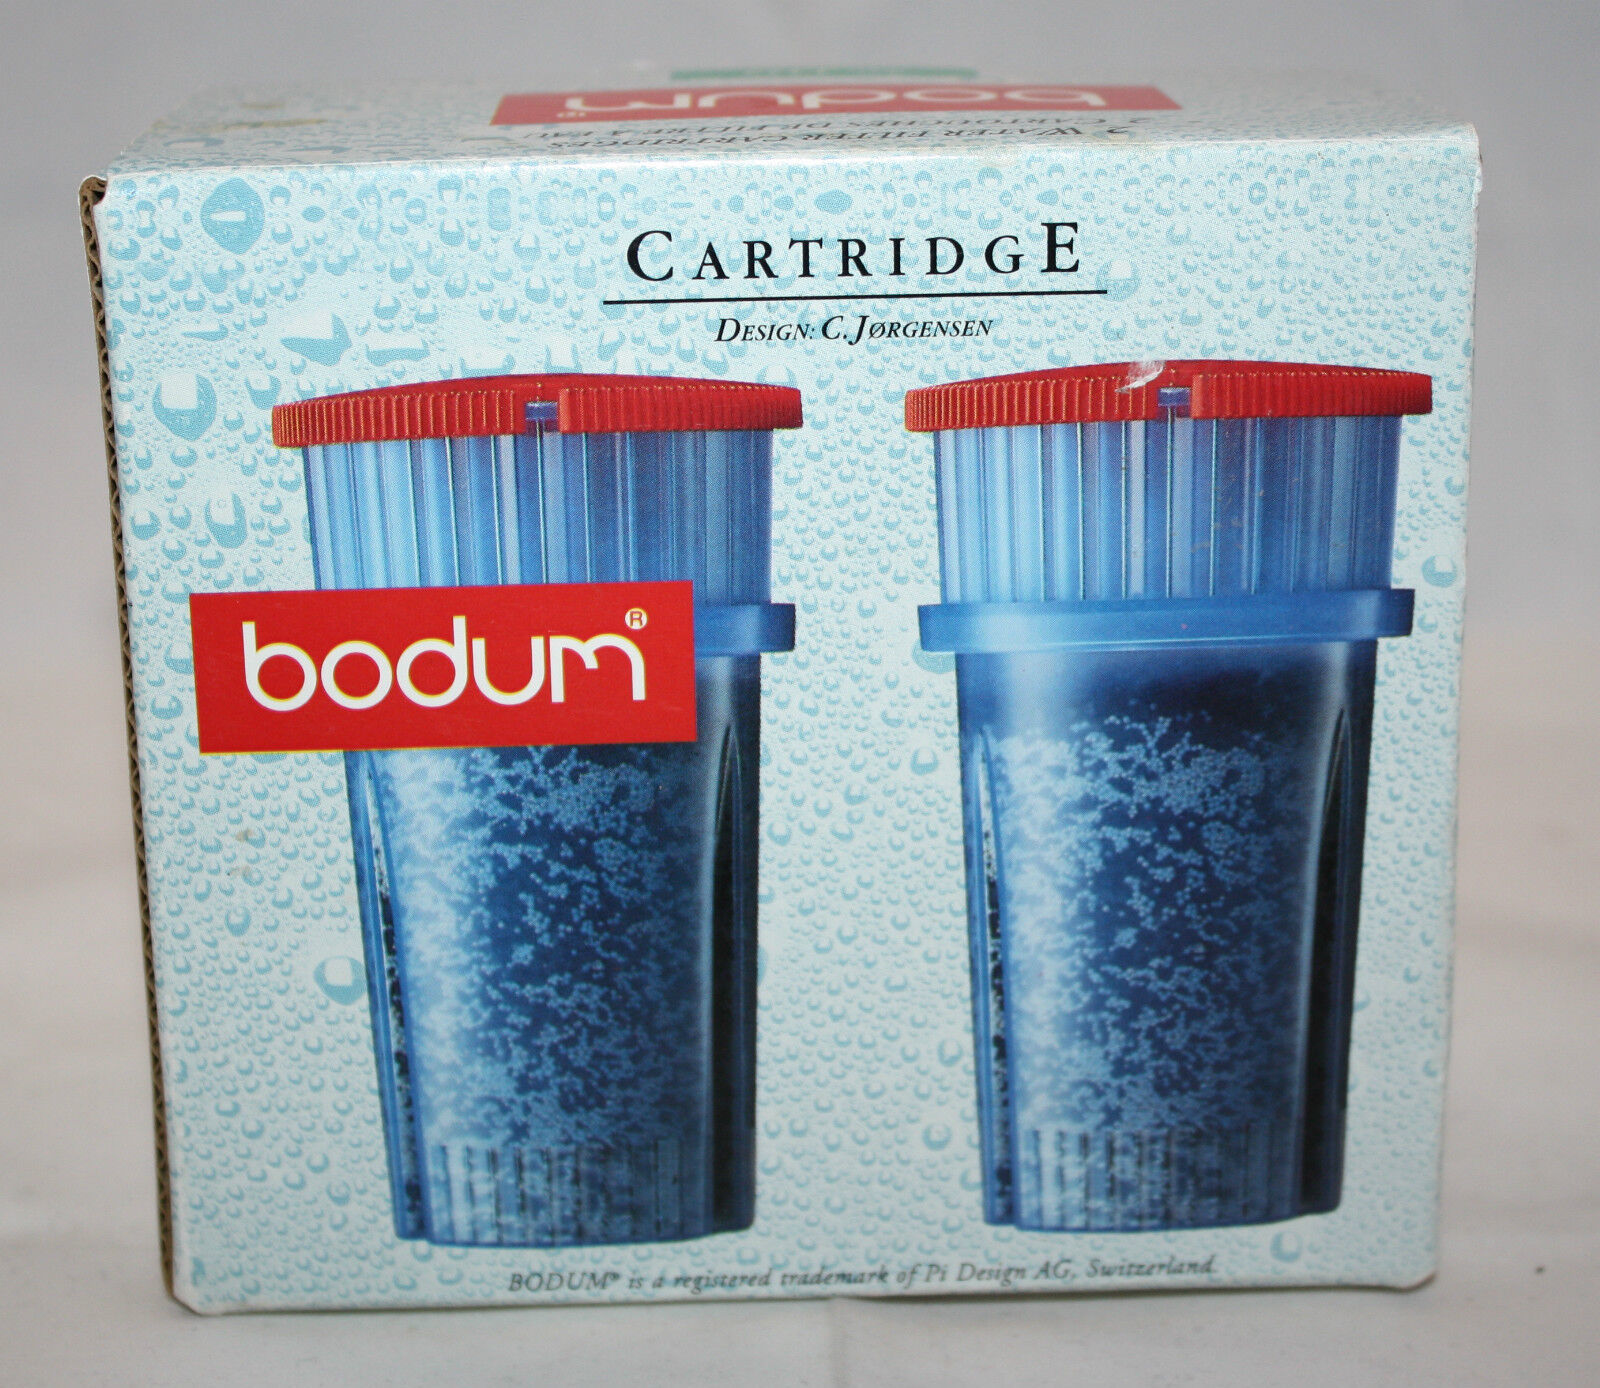 Bodum 2 Water Filter Cartridges Red No. 1342 C Jorgensen Denmark Switzerland New - $35.98